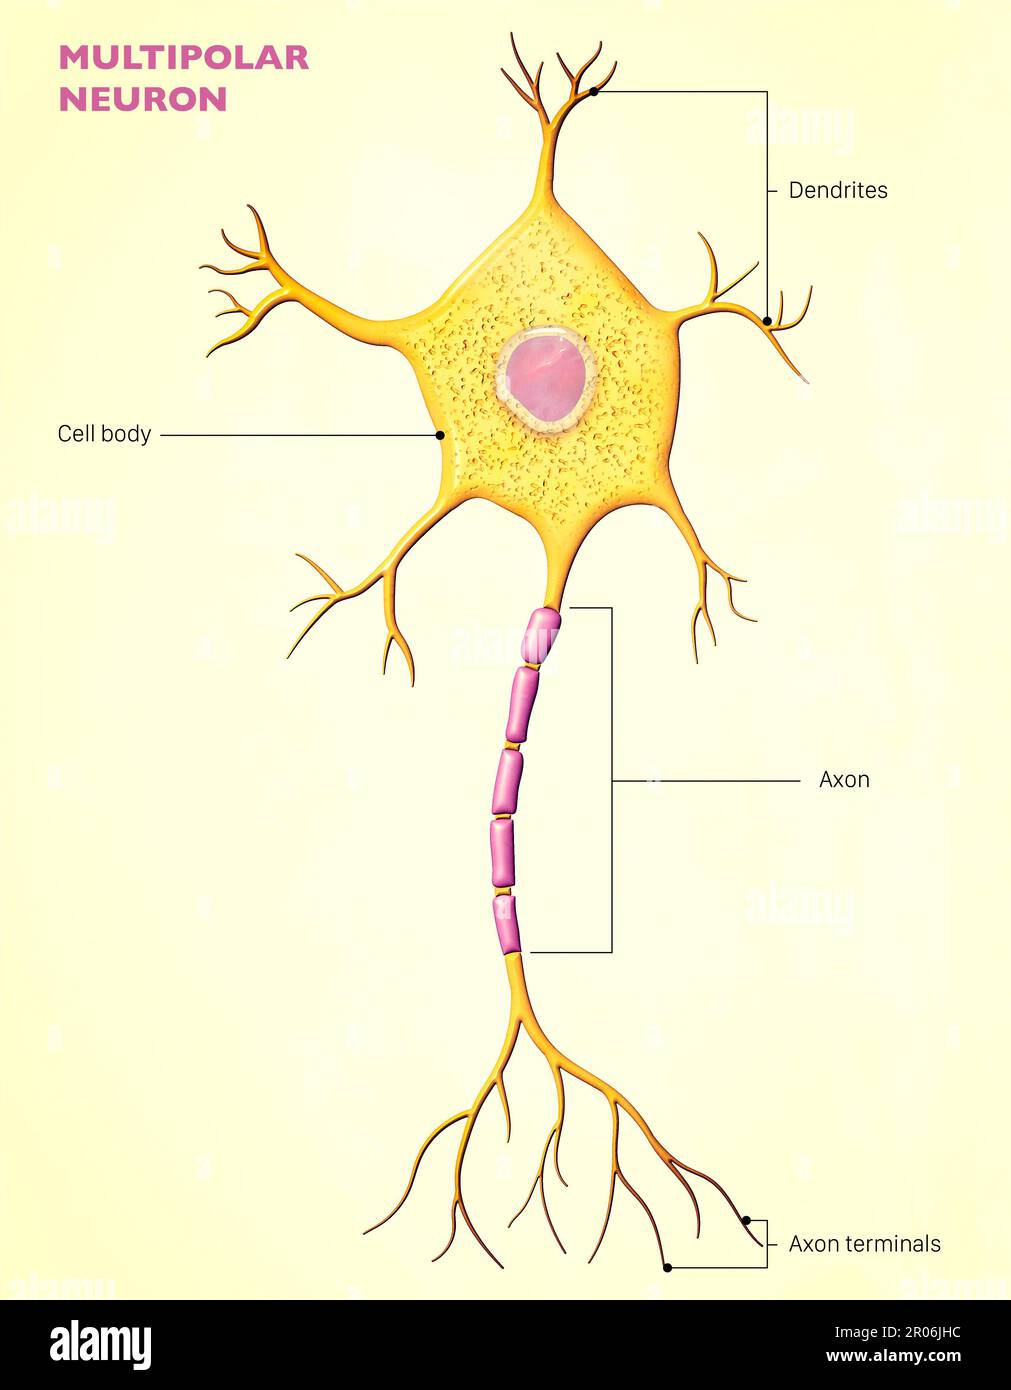 Un neurone multipolaire est un type de neurone qui possède un seul axon et de nombreux dendrites, permettant l'intégration d'informations provenant d'autres neurone Banque D'Images